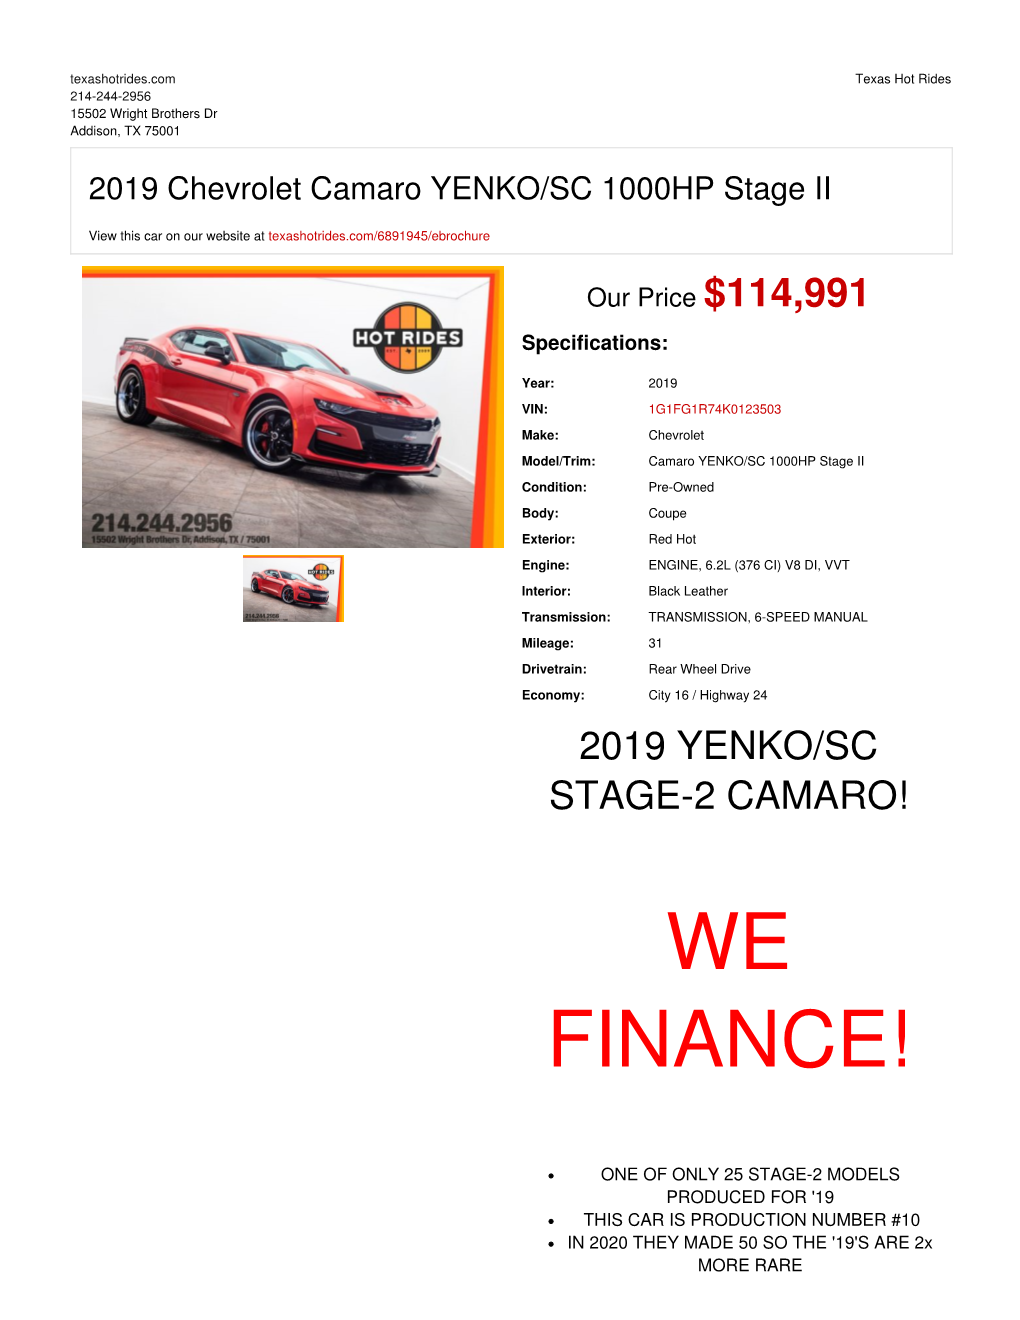 2019 Chevrolet Camaro YENKO/SC 1000HP Stage II